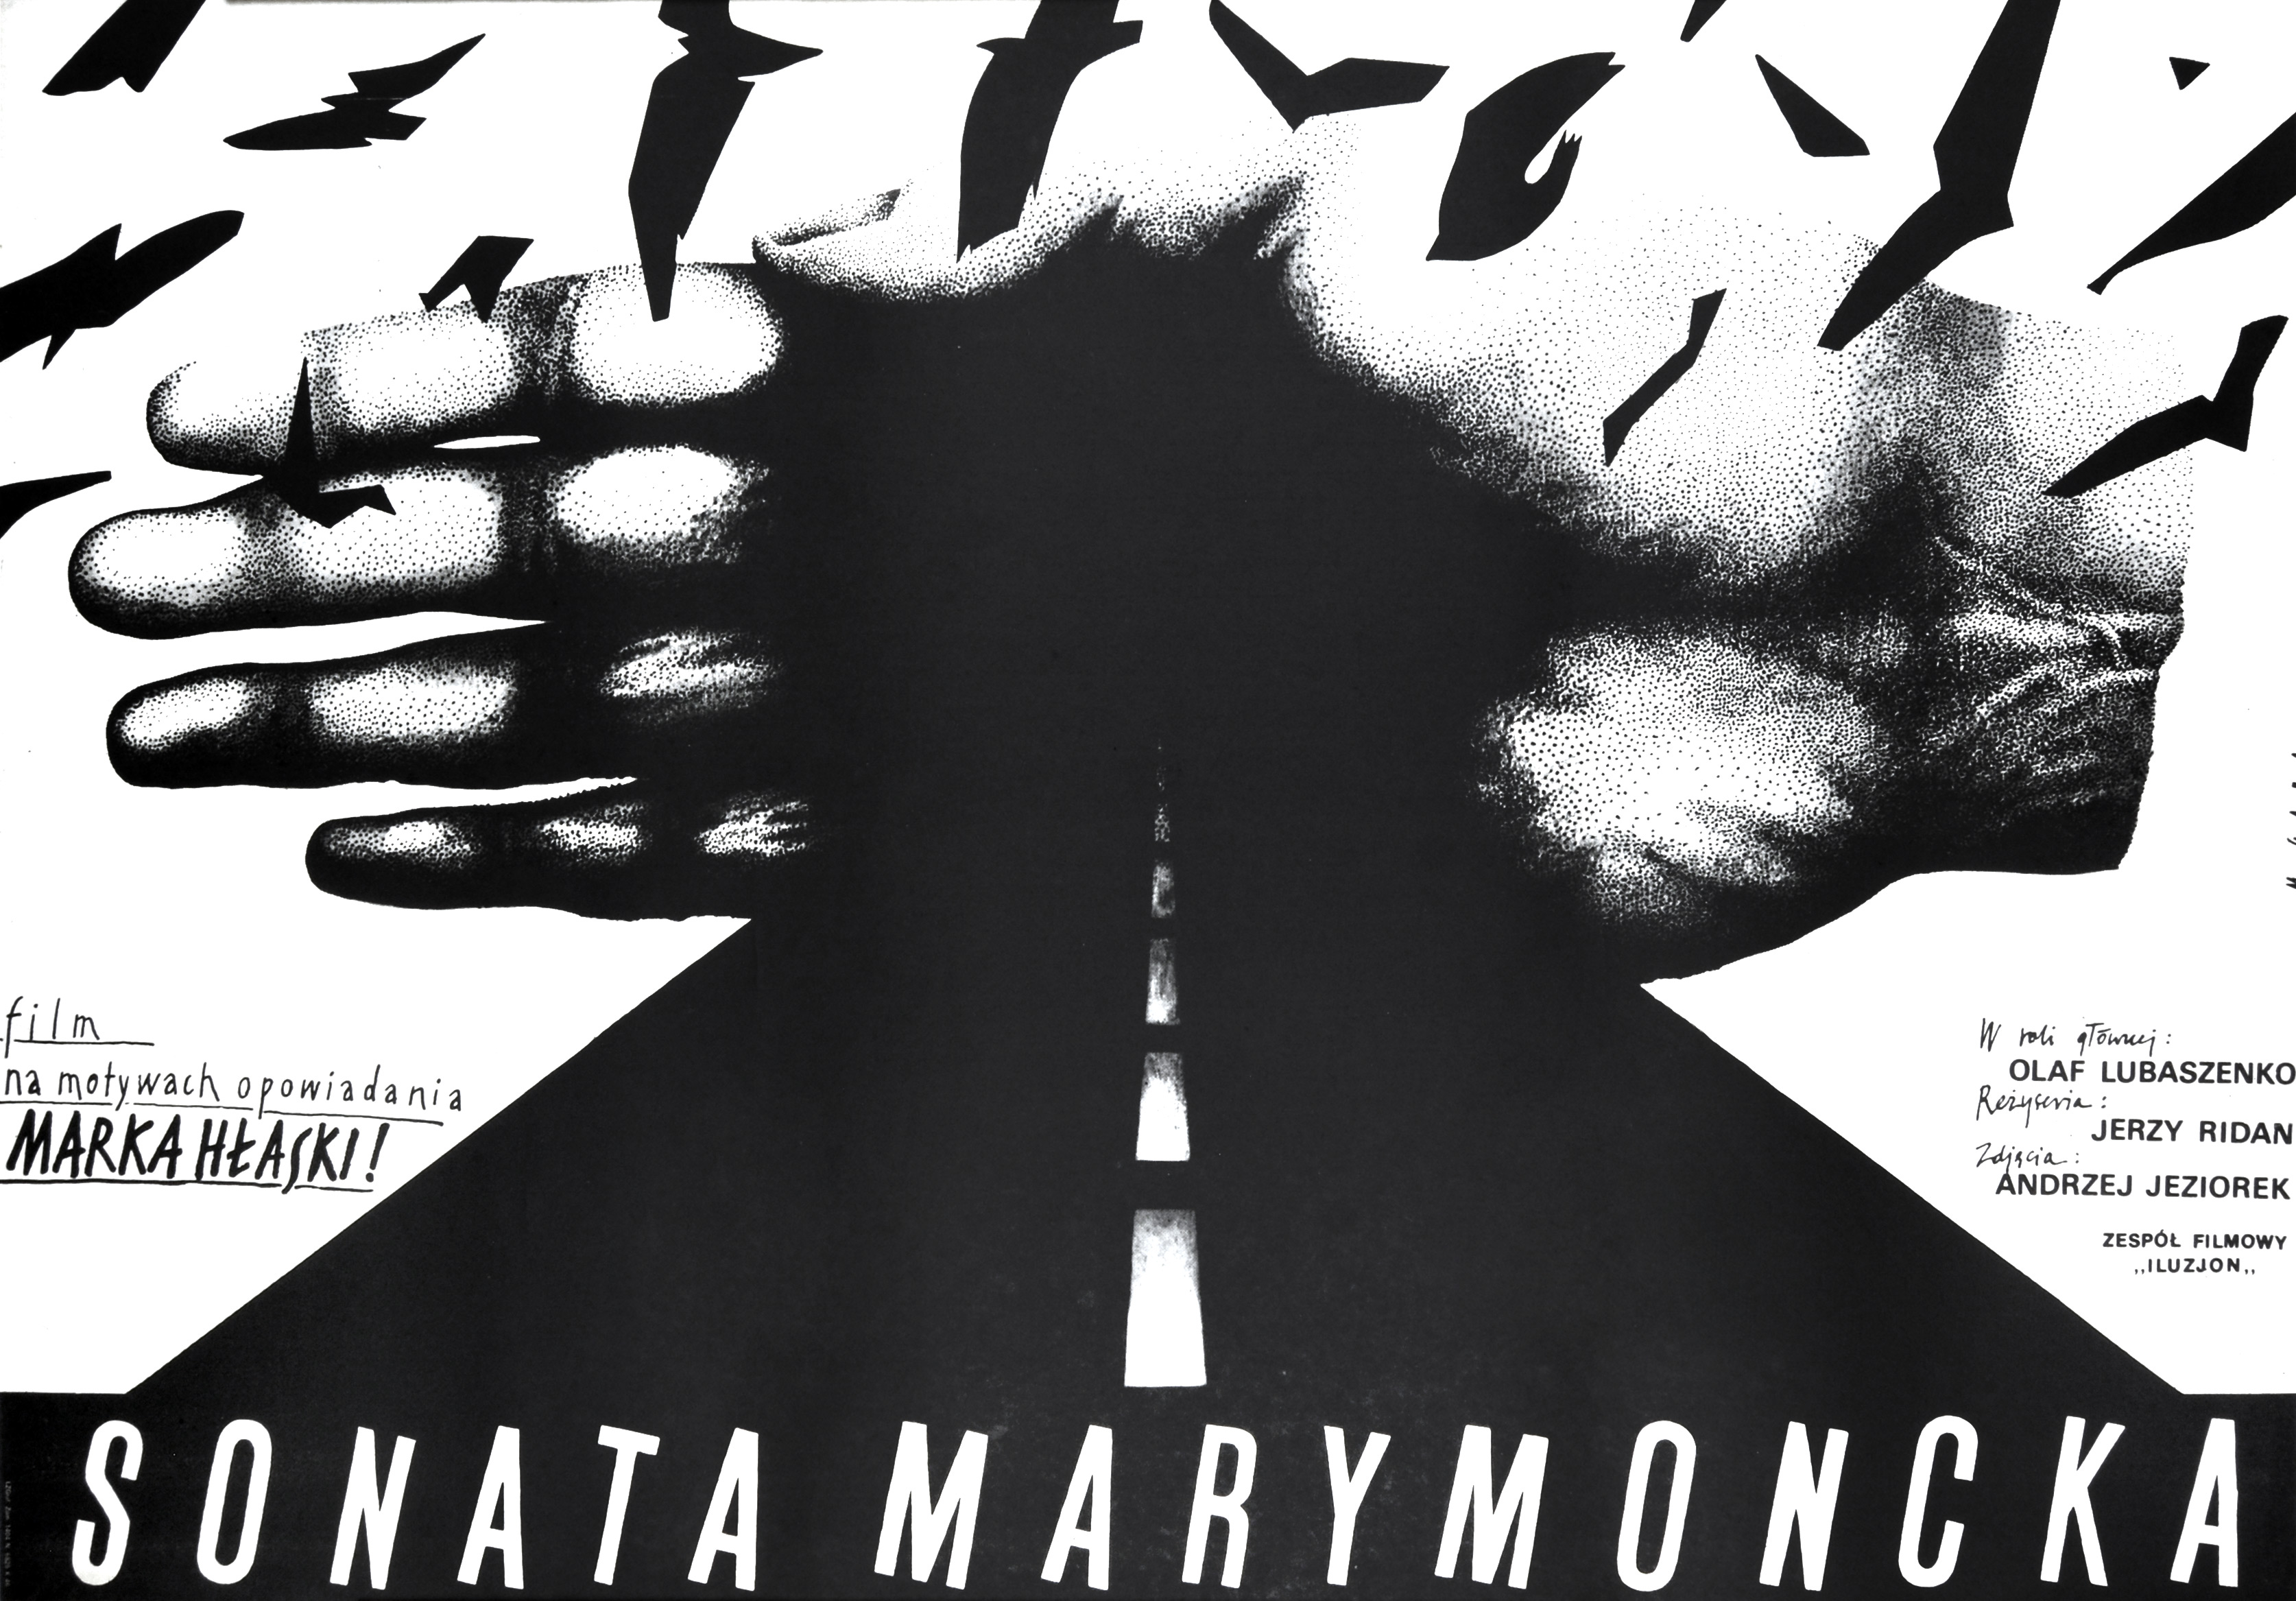 Sonata Marymoncka, 1987